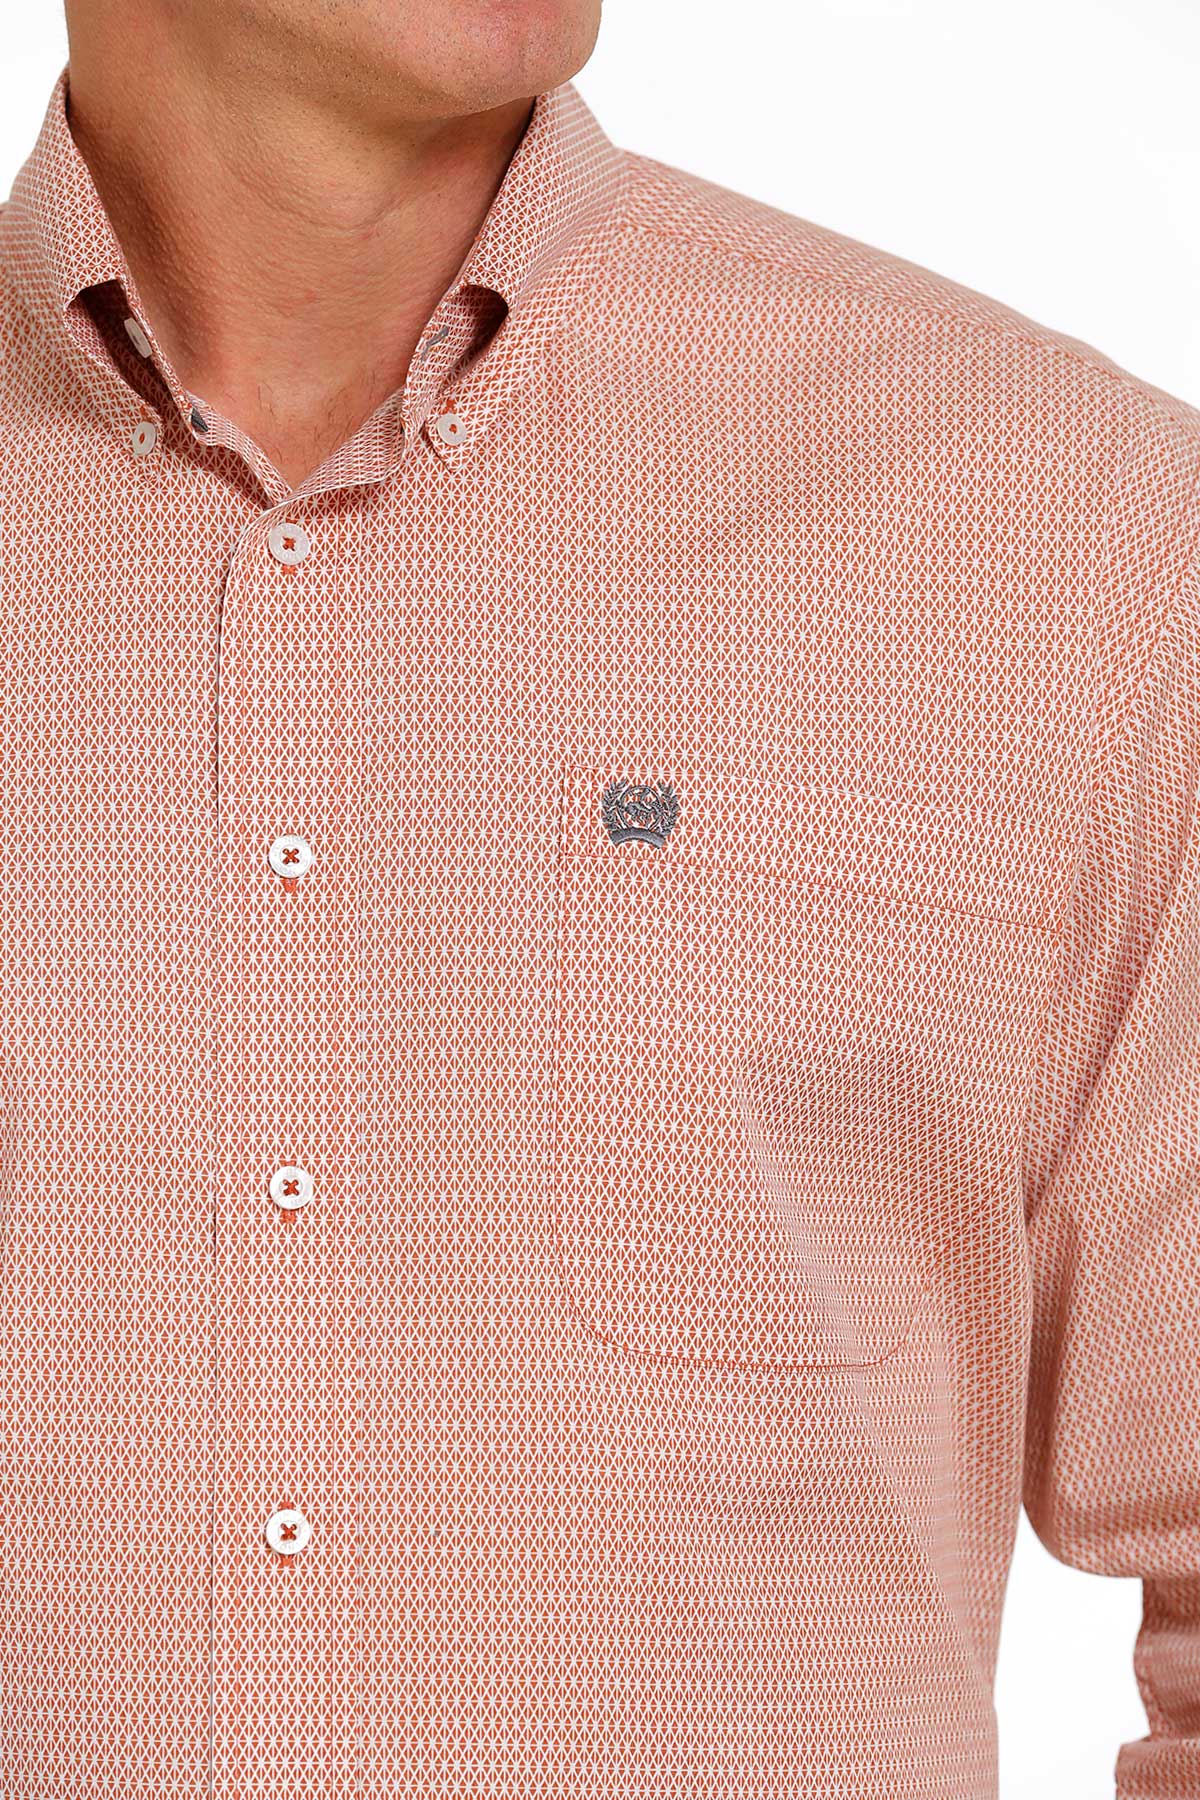 CINCH Men's Orange Button-Down Western Shirt